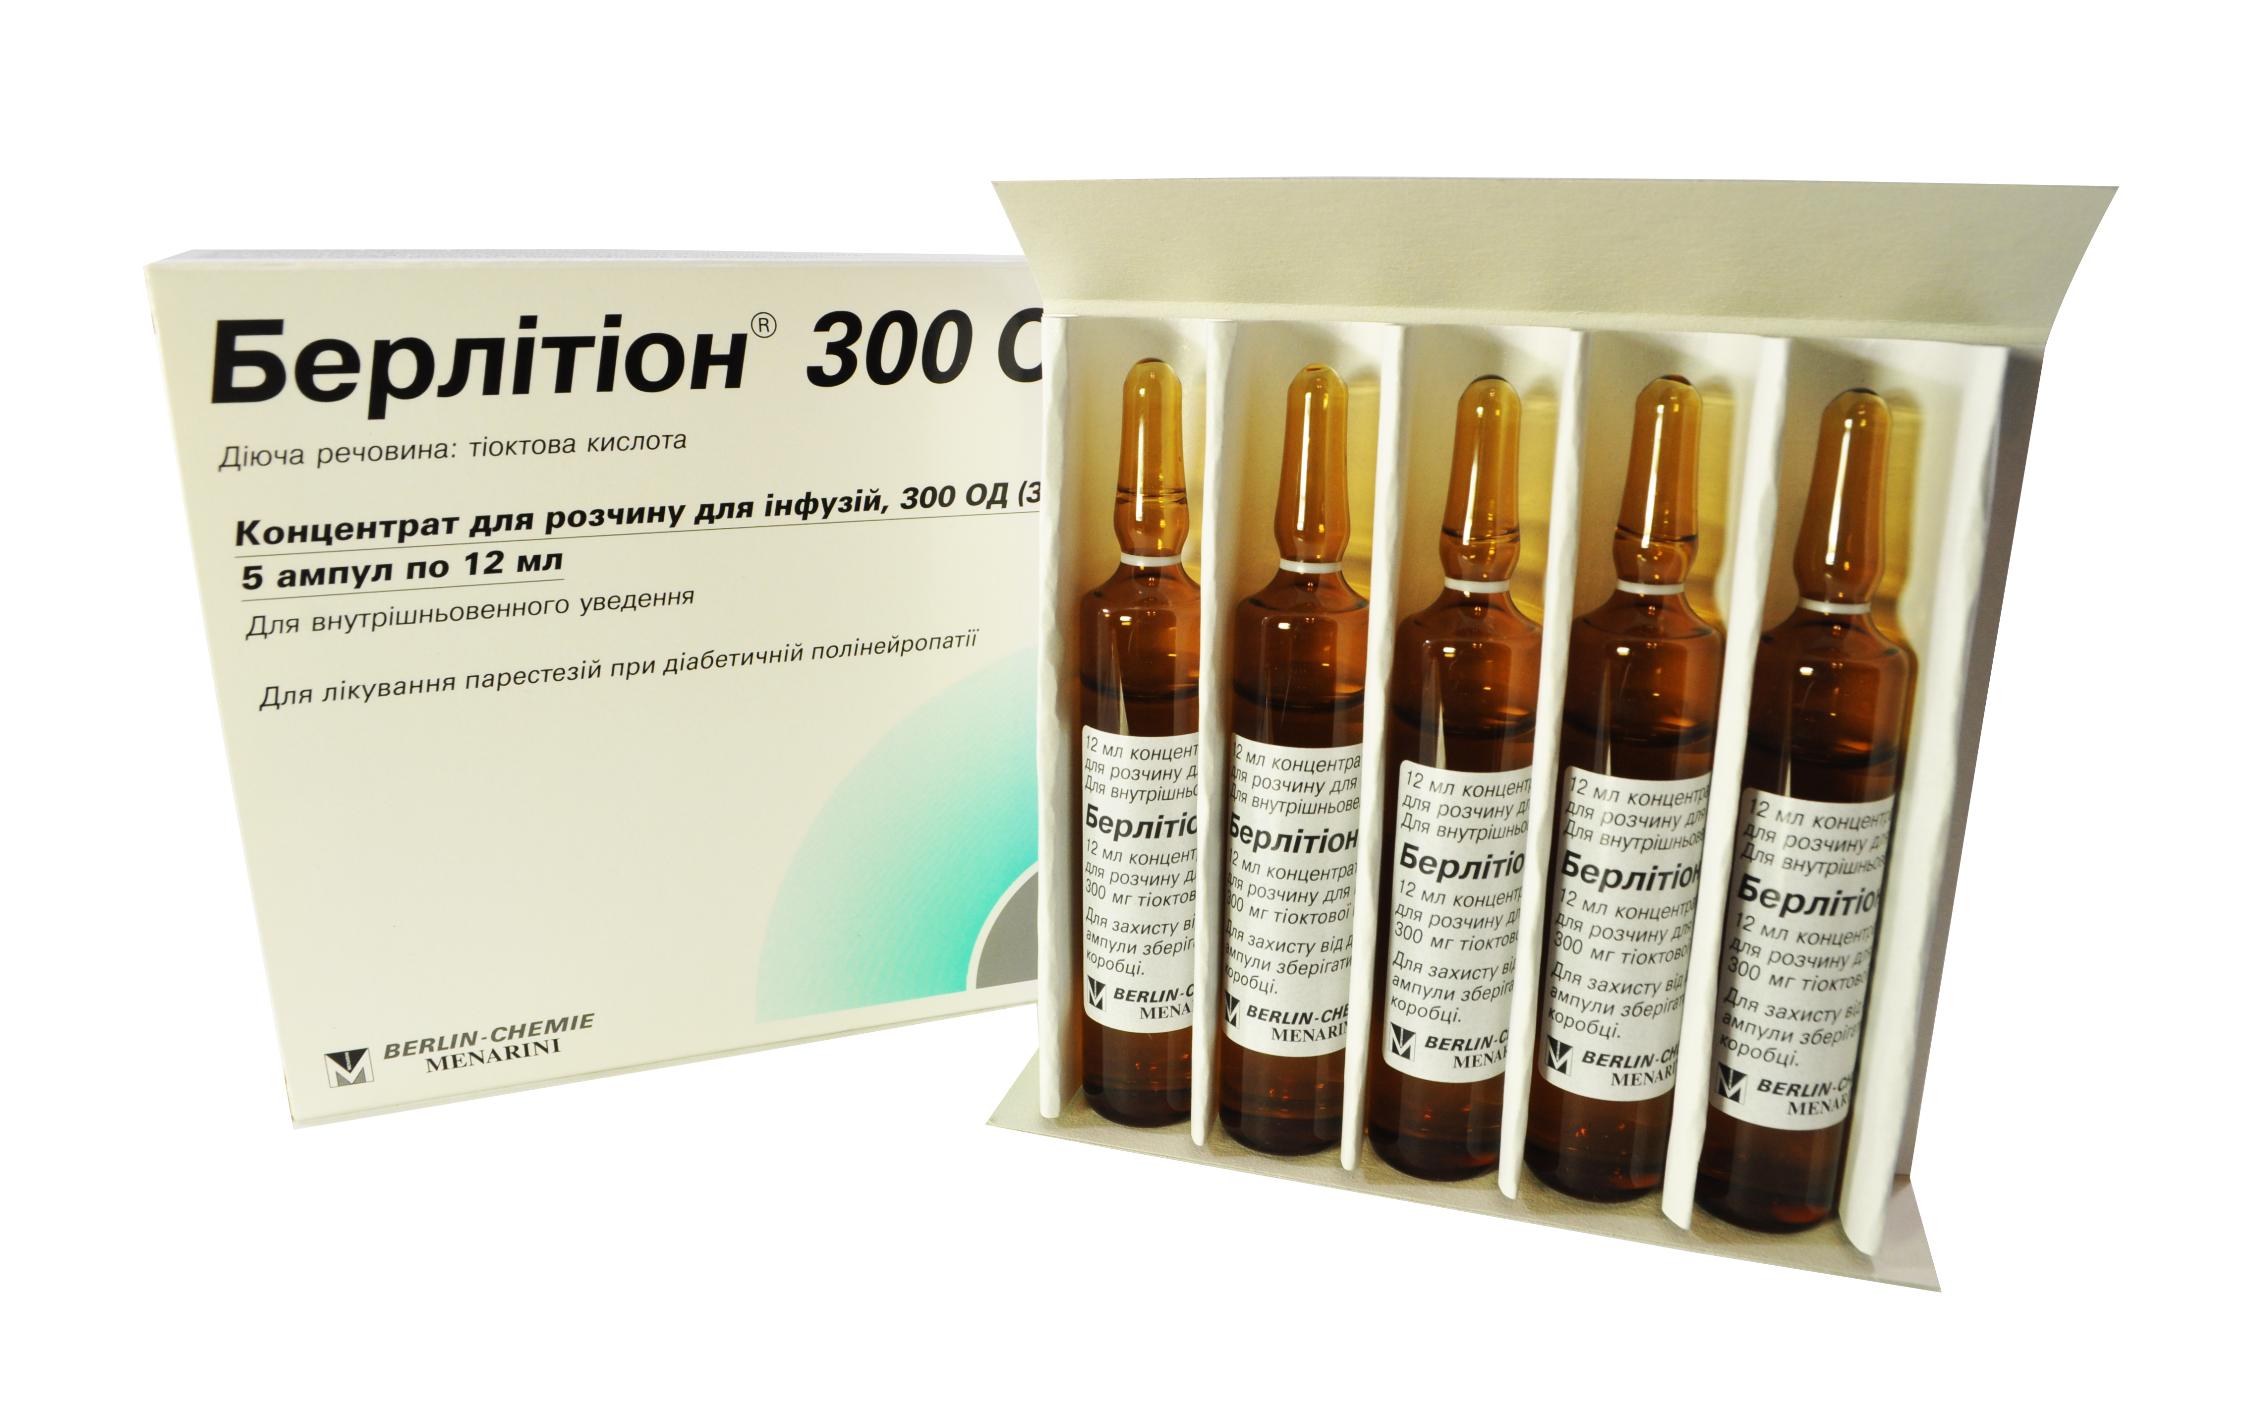 3071 БЕРЛІТІОН® 600 ОД - Thioctic acid